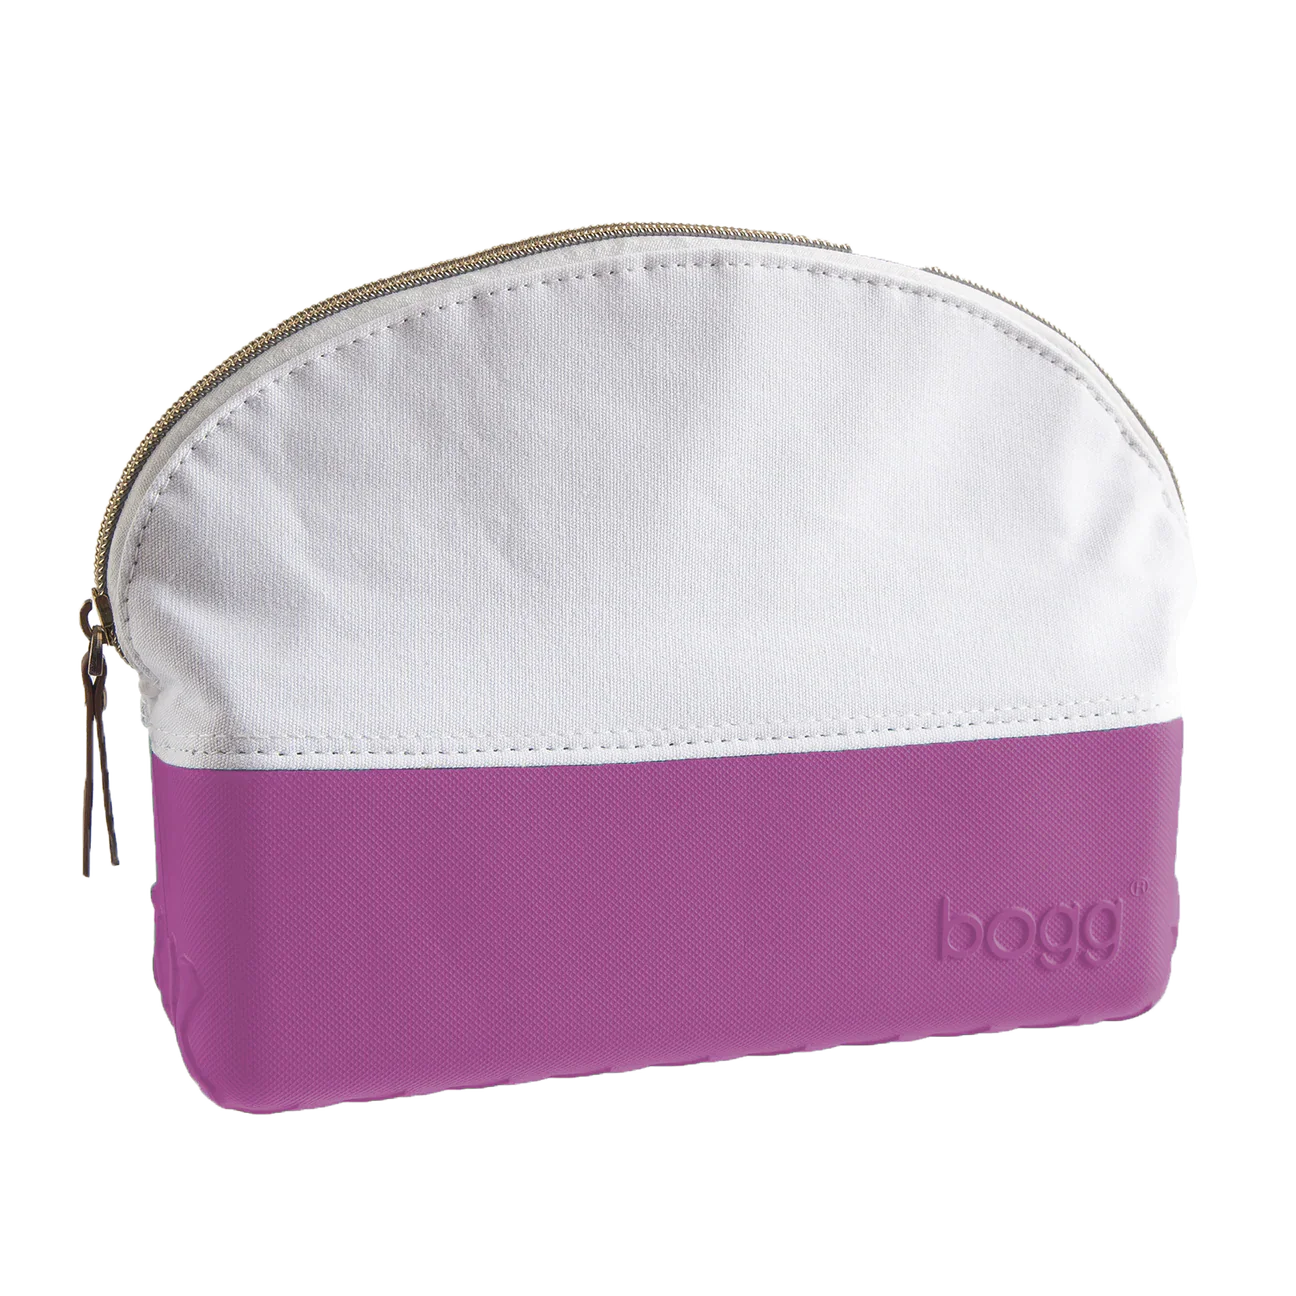 Custom Monogram Bogg Bag Tassel – Ava Reign